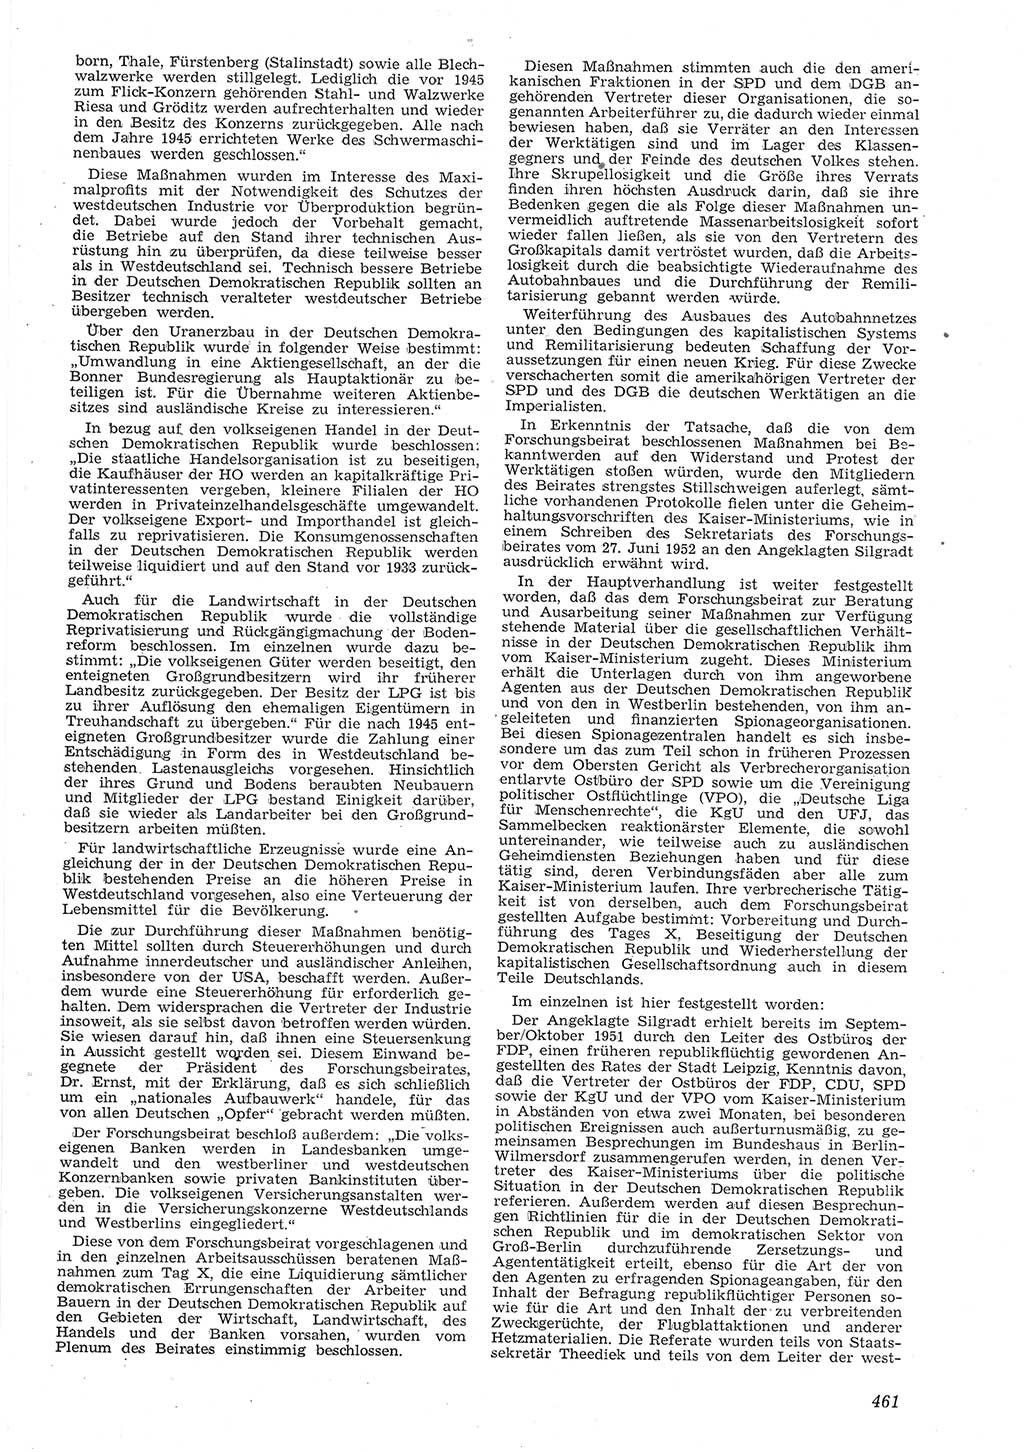 Neue Justiz (NJ), Zeitschrift für Recht und Rechtswissenschaft [Deutsche Demokratische Republik (DDR)], 8. Jahrgang 1954, Seite 461 (NJ DDR 1954, S. 461)